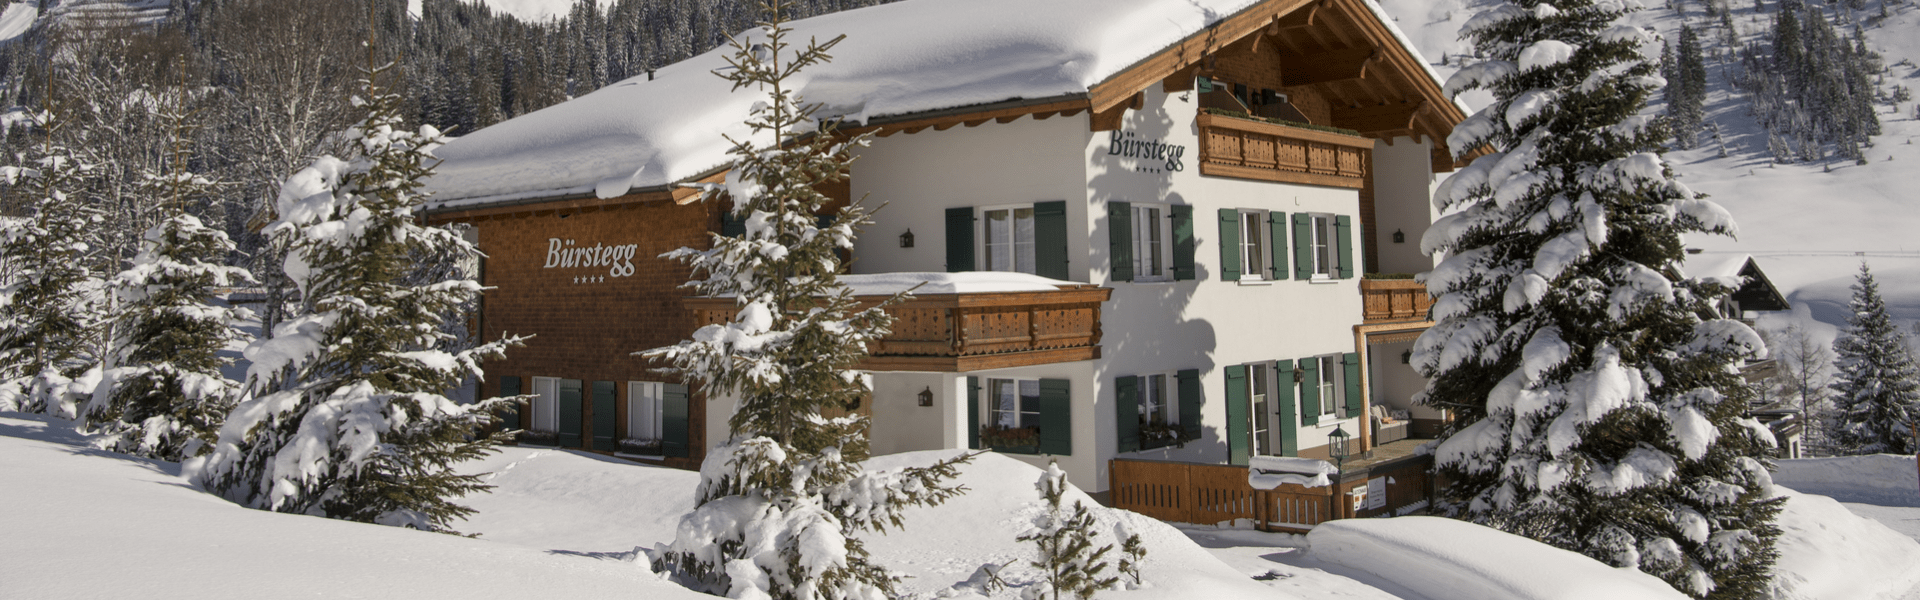 Aussenansicht im Winterzauber der Frühstückspension Bürstegg in Lech am Arlberg